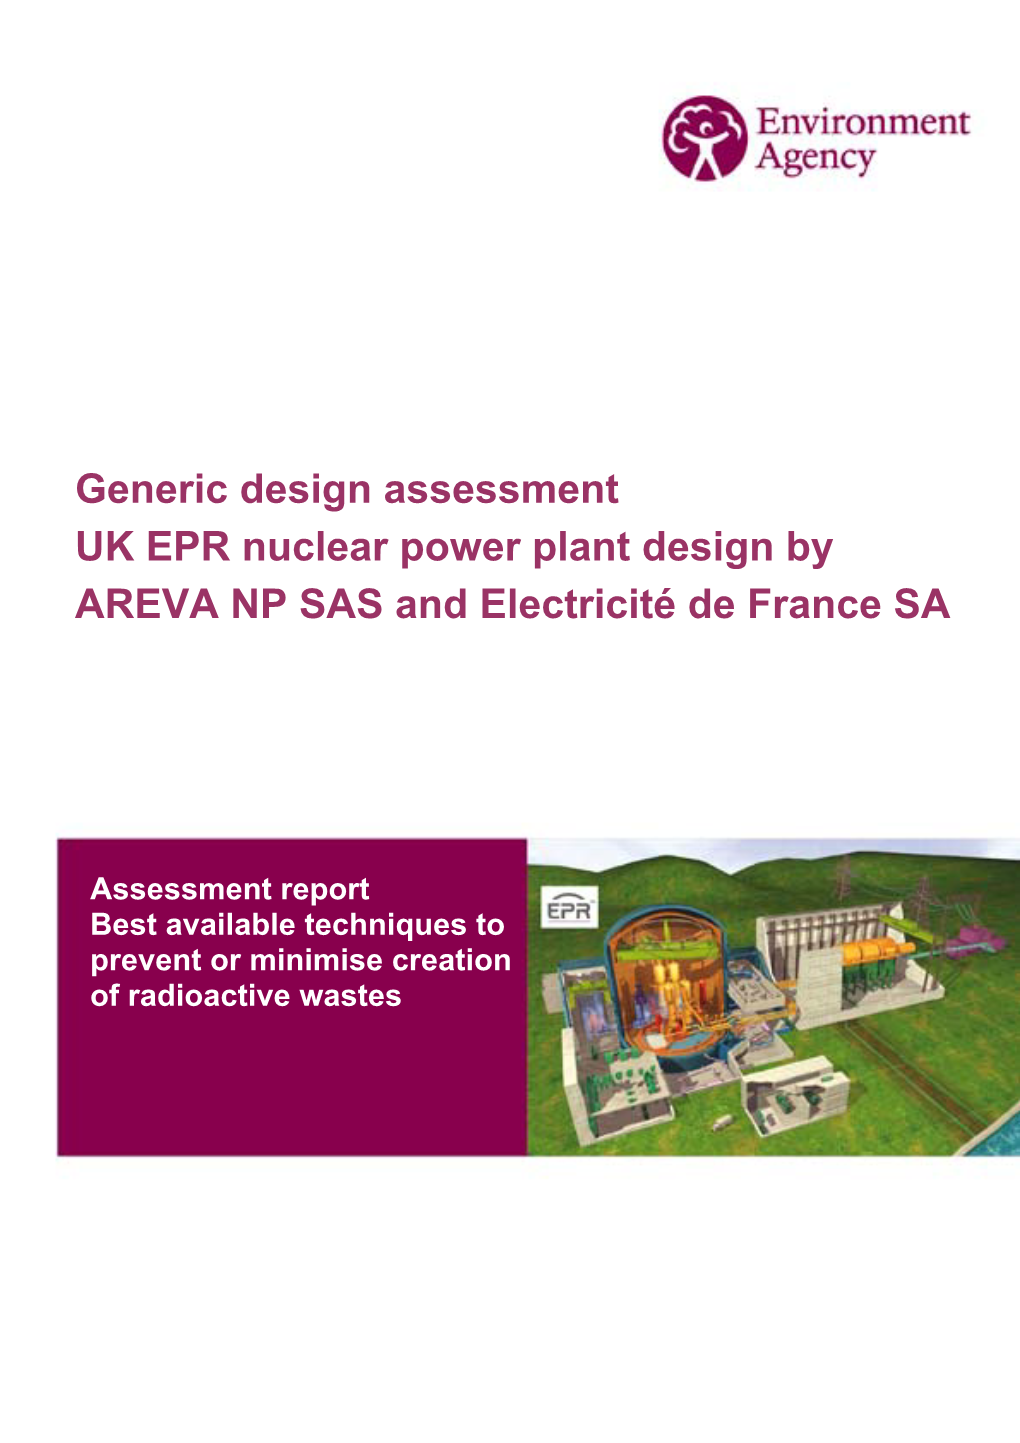 Generic Design Assessment UK EPR Nuclear Power Plant Design by AREVA NP SAS and Electricité De France SA